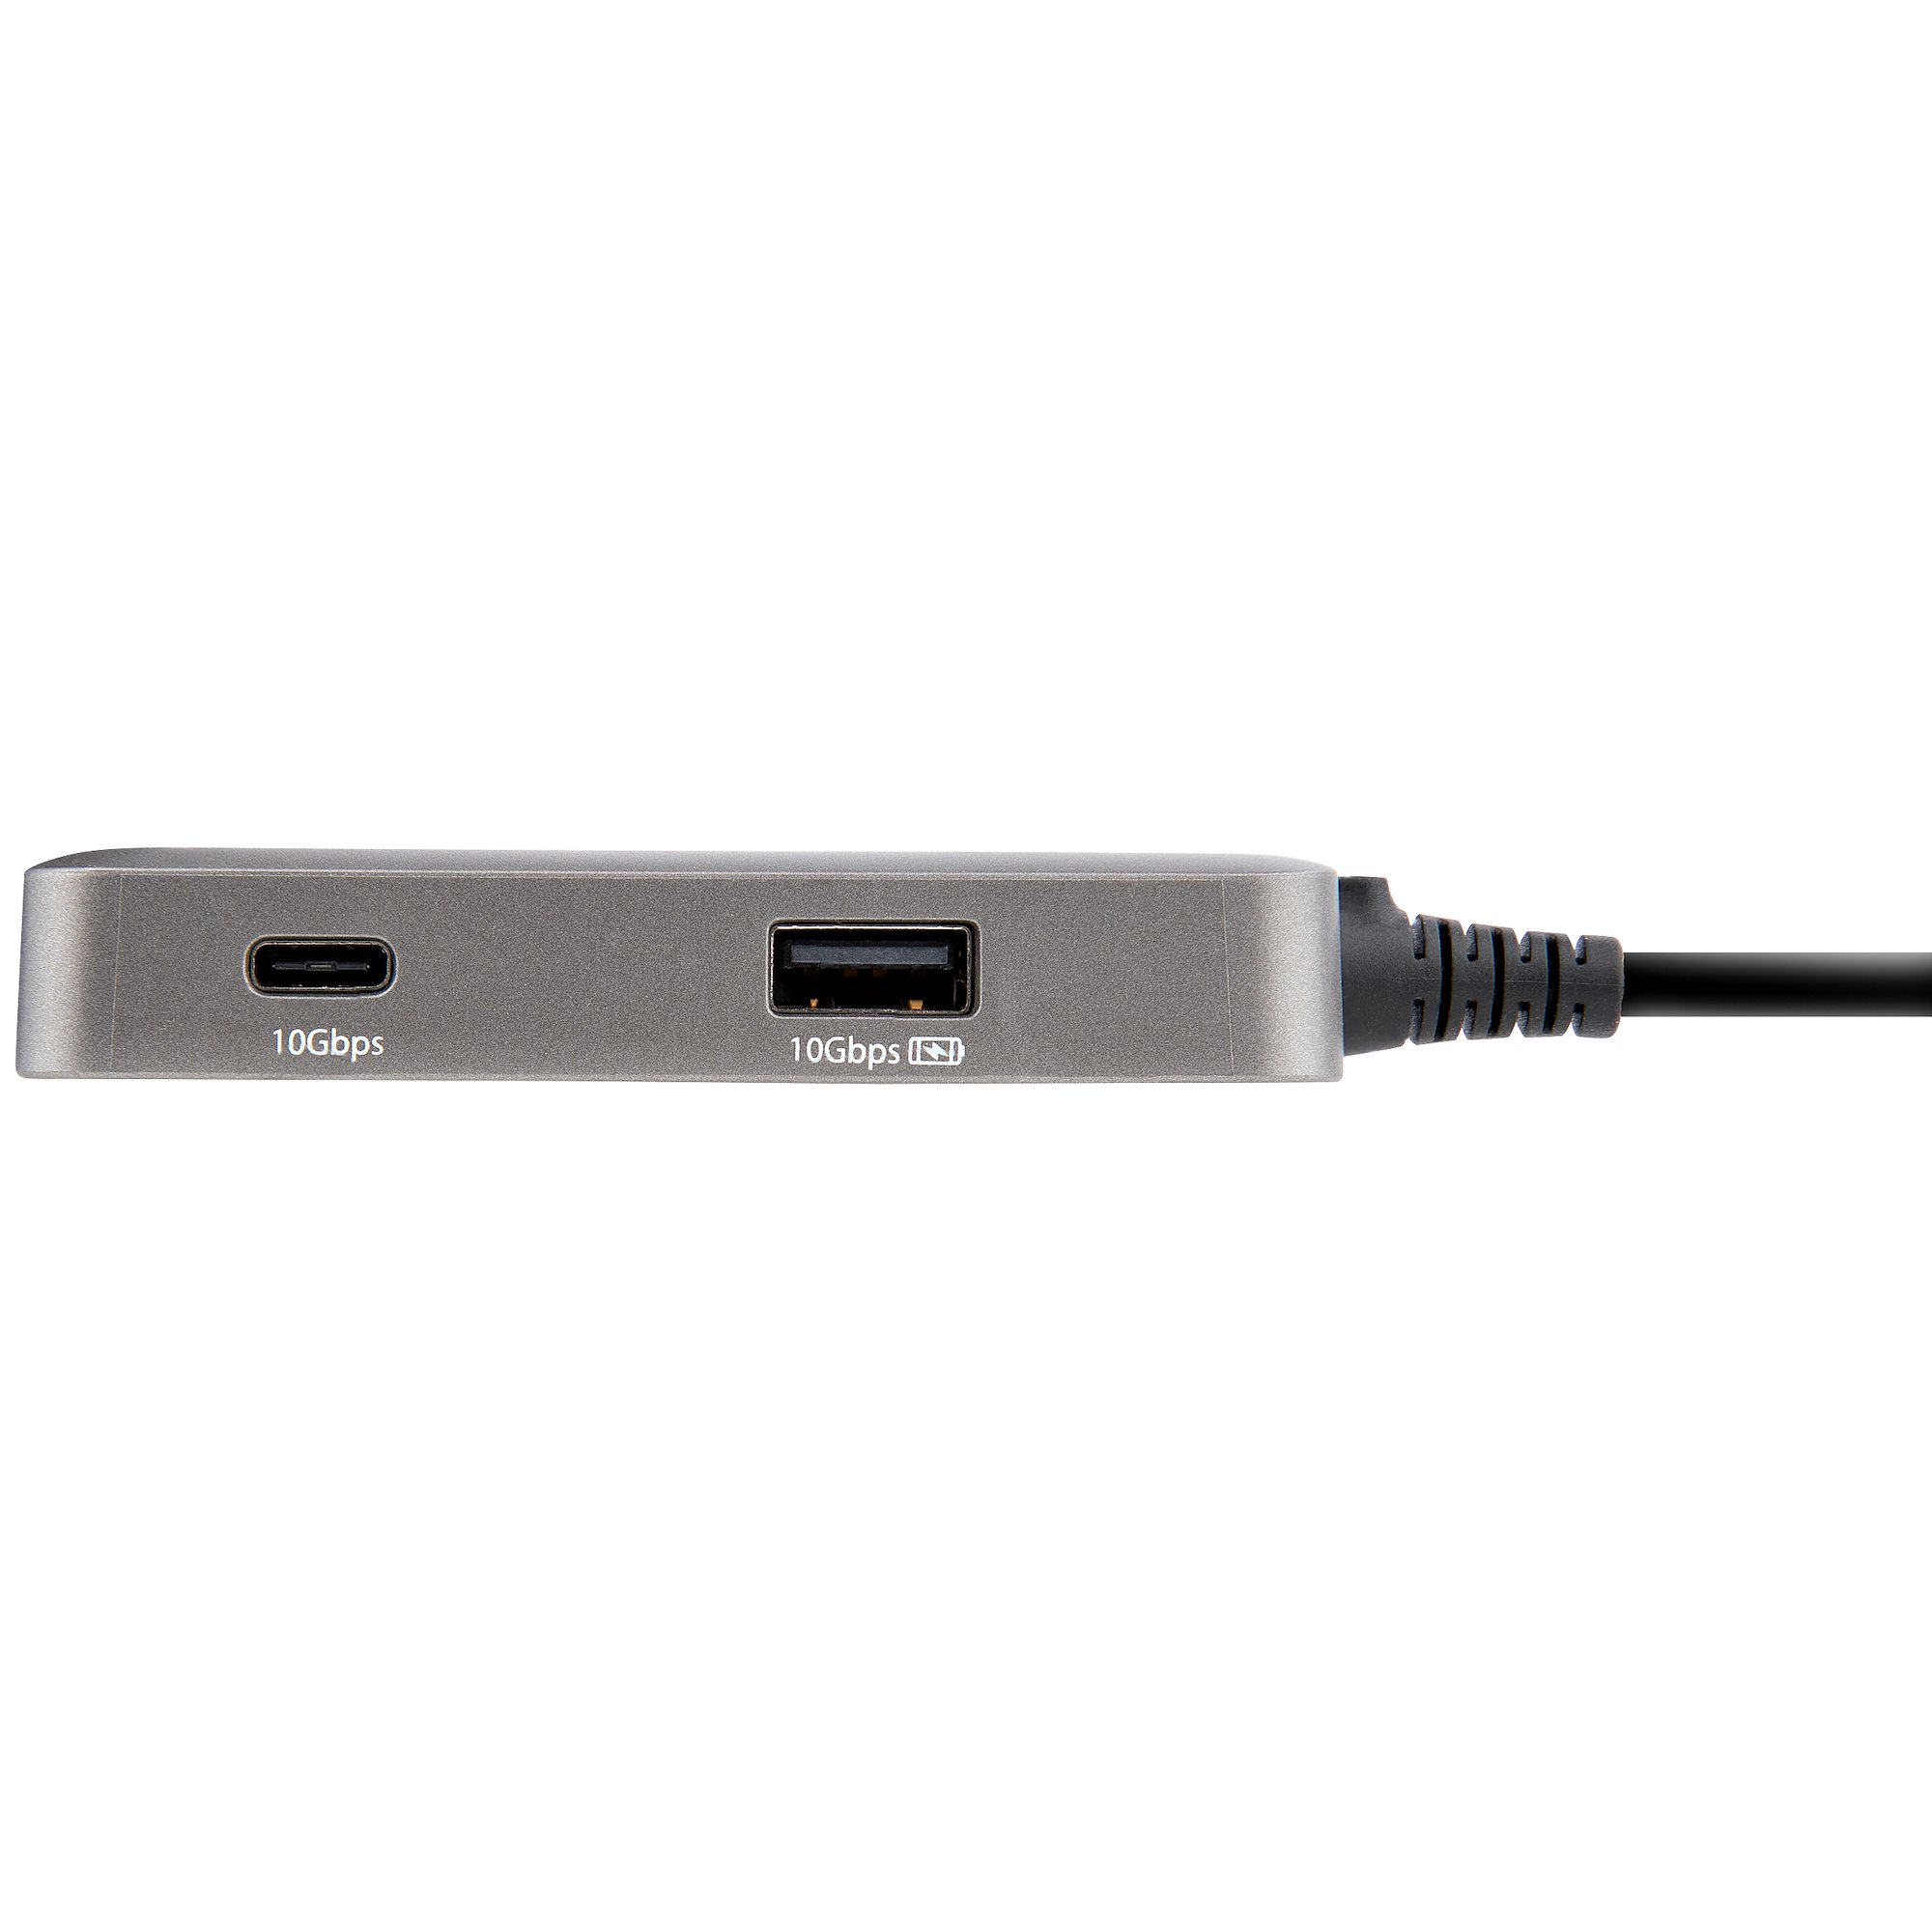 Cable largo USB C, adaptador multipuerto USB C a HDMI, HDMI 4K, entrega de  energía de 100 W, 2 puertos USB A 3.0, 1 USB C Hub 3.0, dongle USB C para